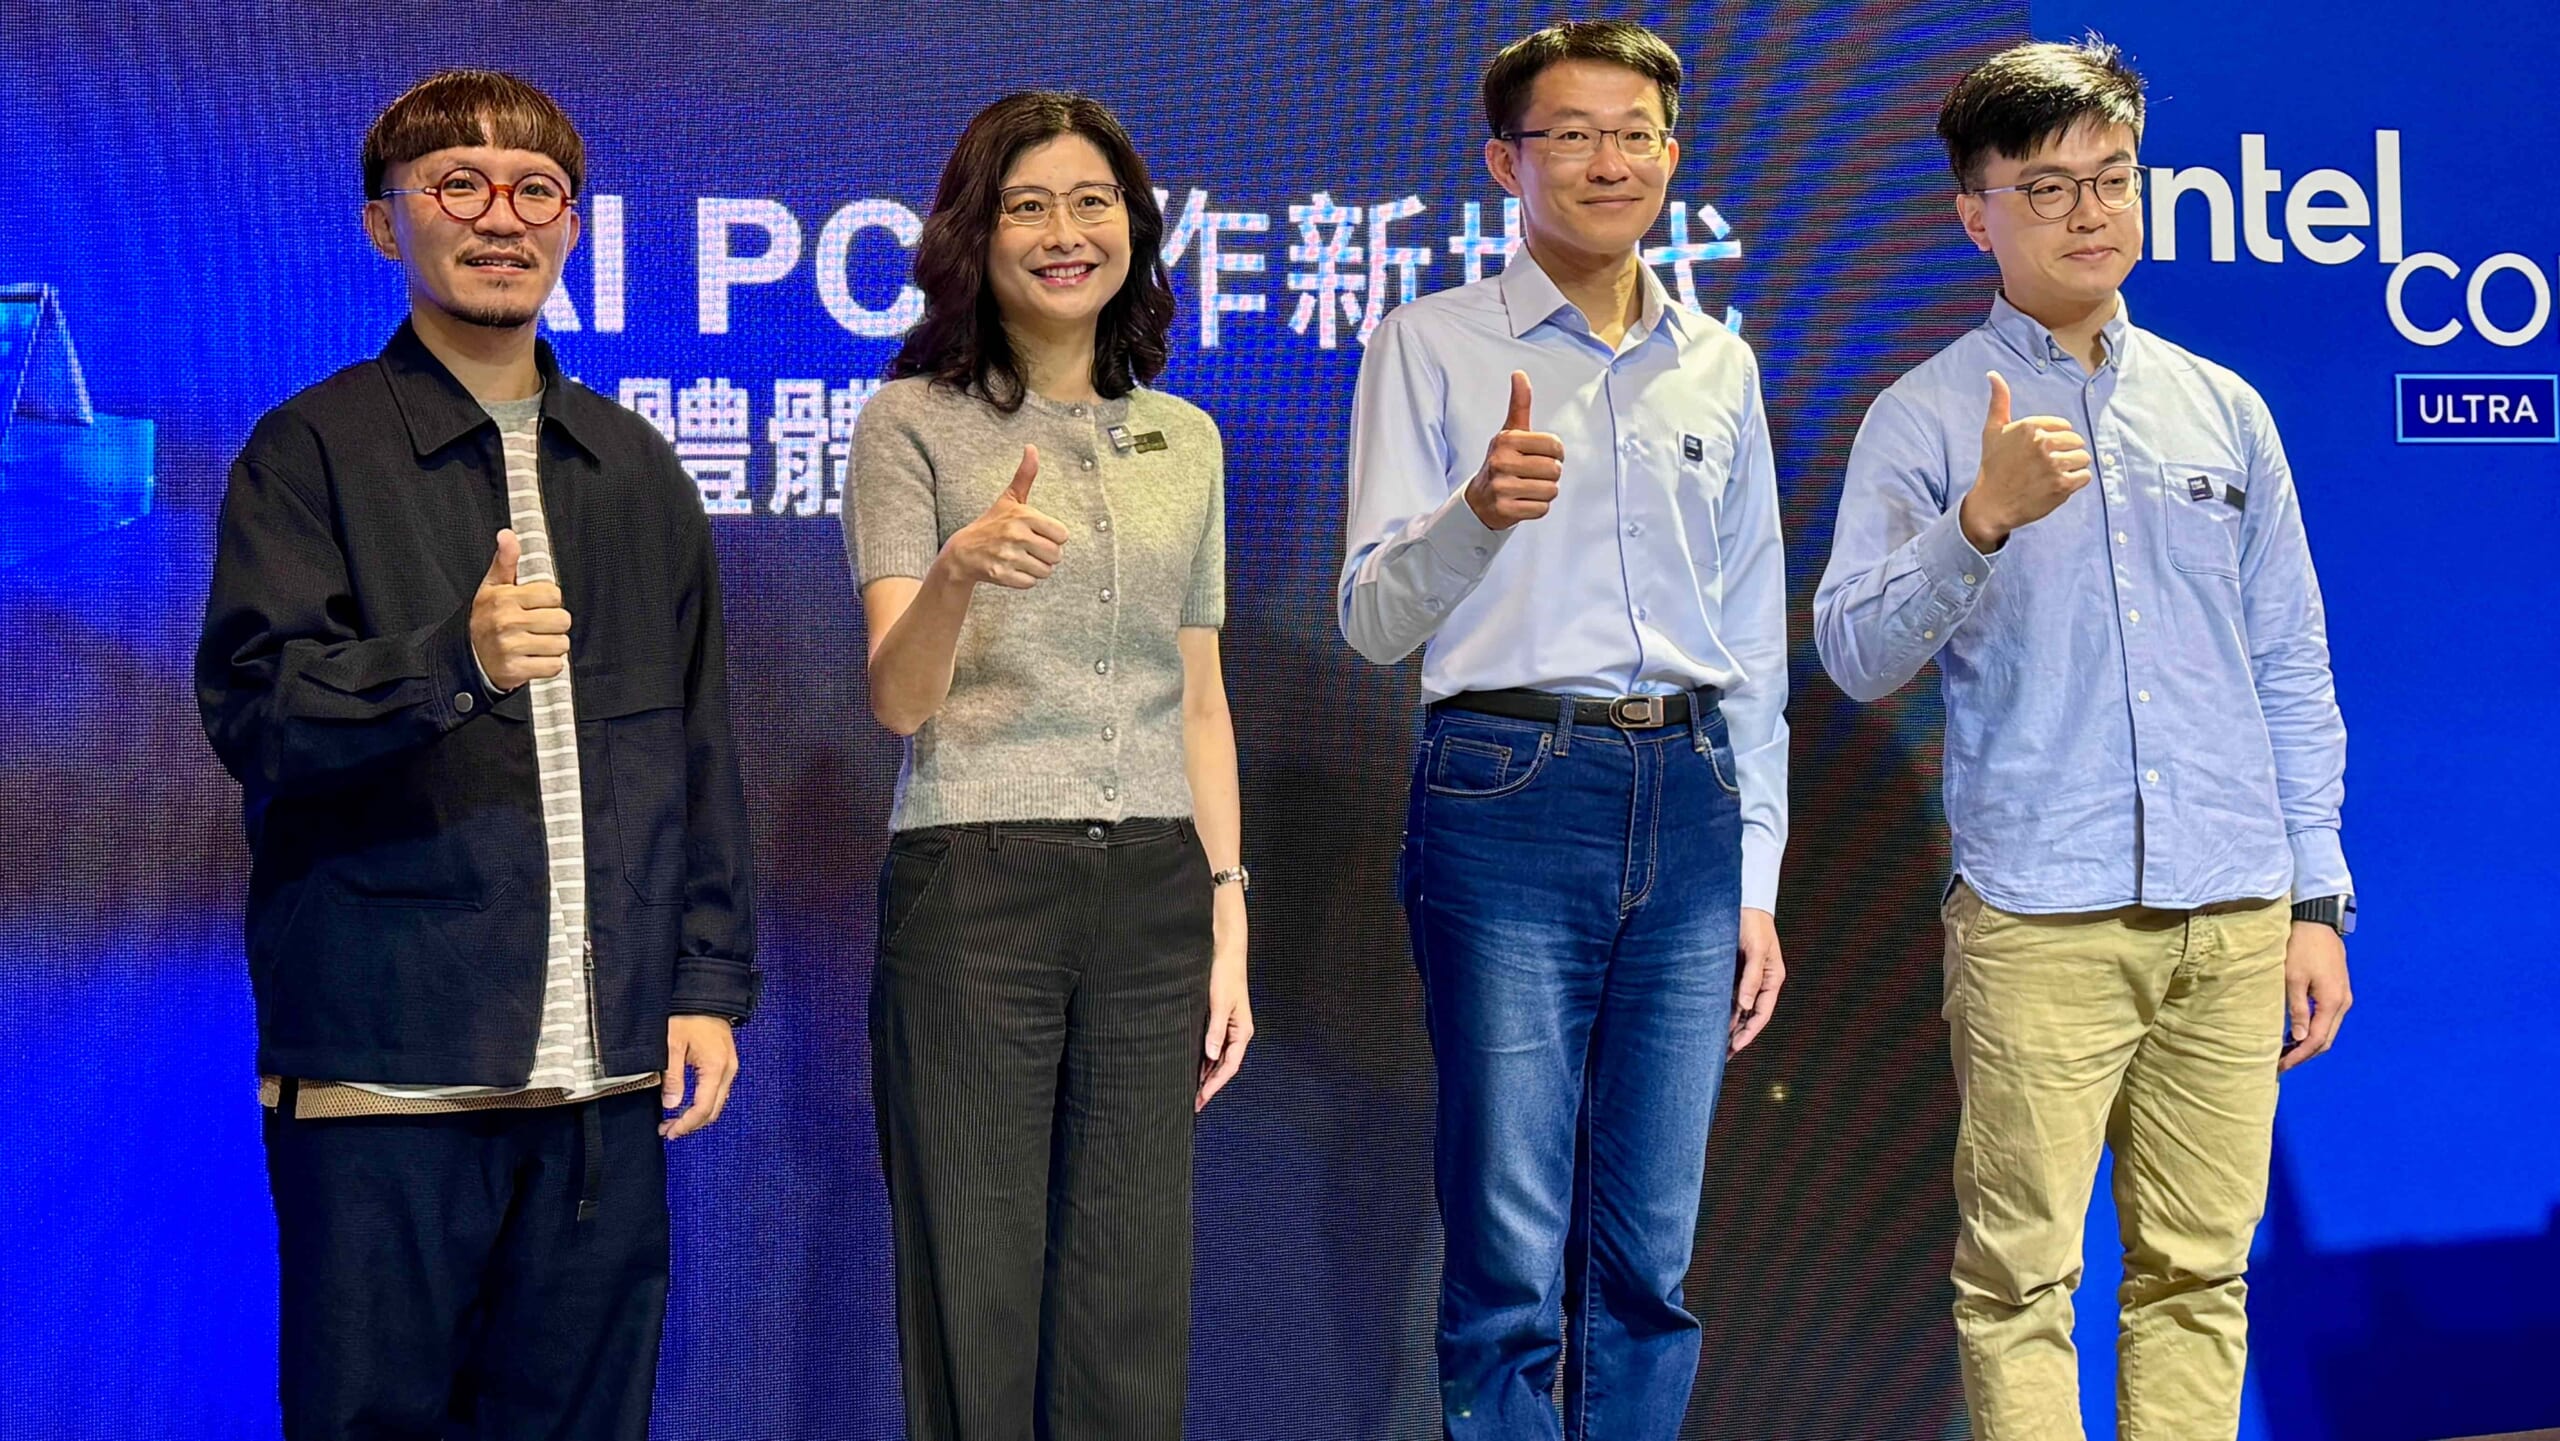 英特爾副總裁暨台灣分公司總經理汪佳慧（左二）在「AI PC 創作新世代」活動上和與會者合照，表示全面落實AI PC時代的到來。（古明弘攝）